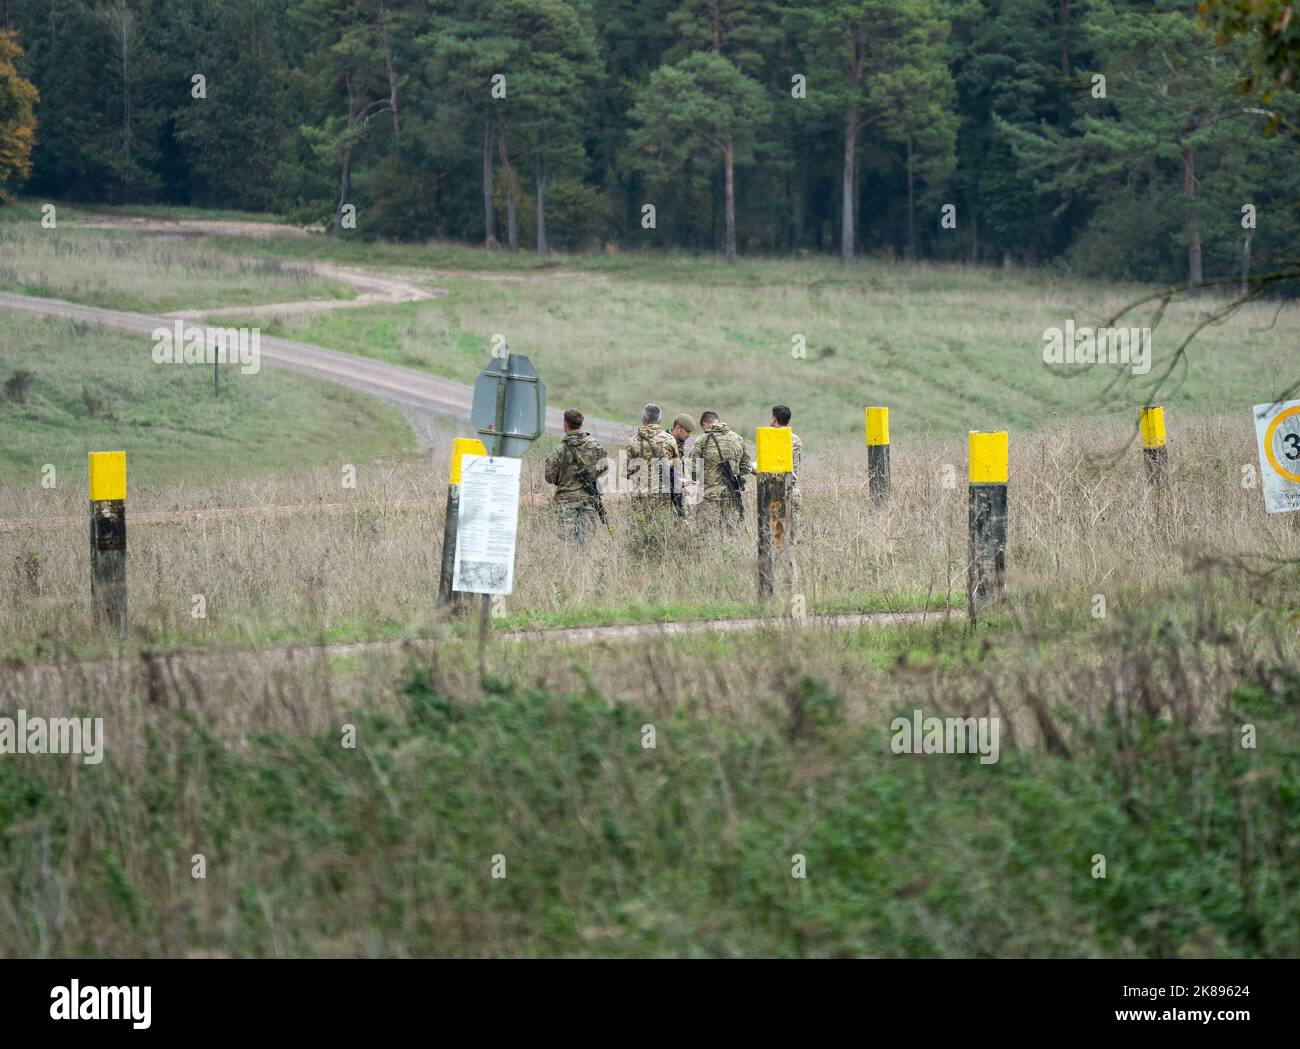 Mehrere Soldaten der britischen Armee mit teleskopierbaren Gewehren ausgestattet, Kartenlesung in Vorbereitung auf eine militärische Übung Stockfoto